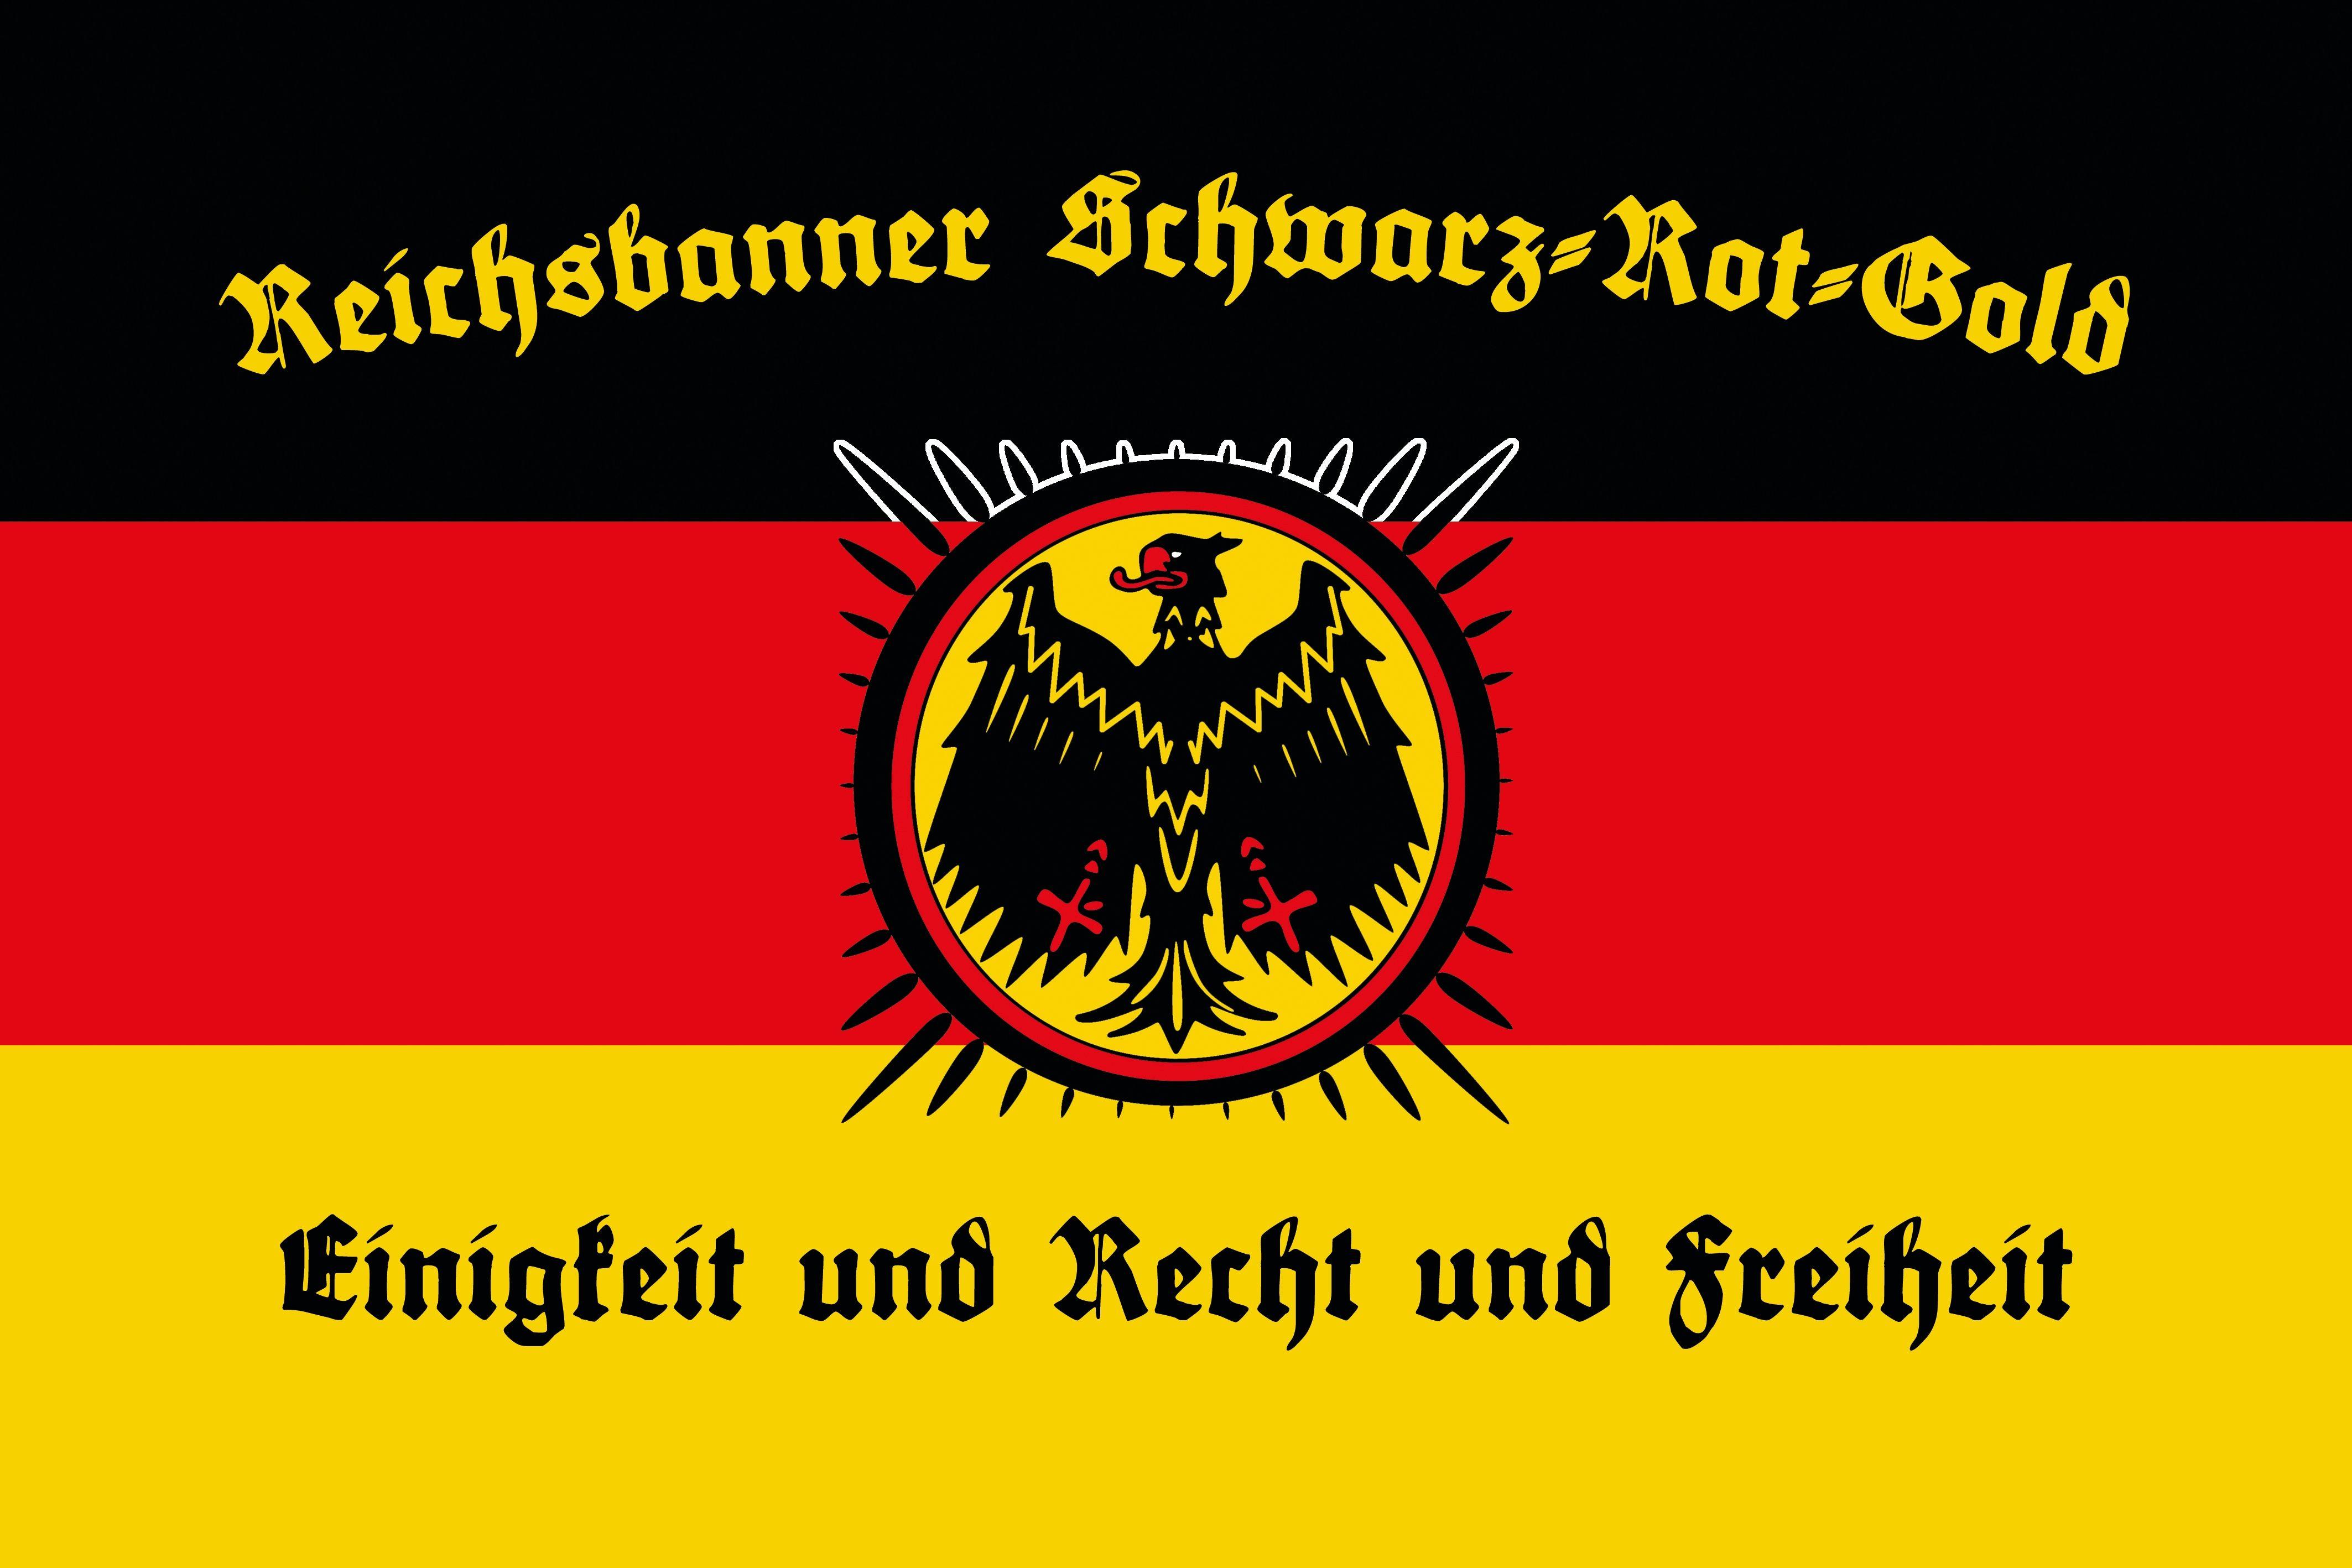 Black Red and Gold Logo - Reichsbanner Schwarz-Rot-Gold